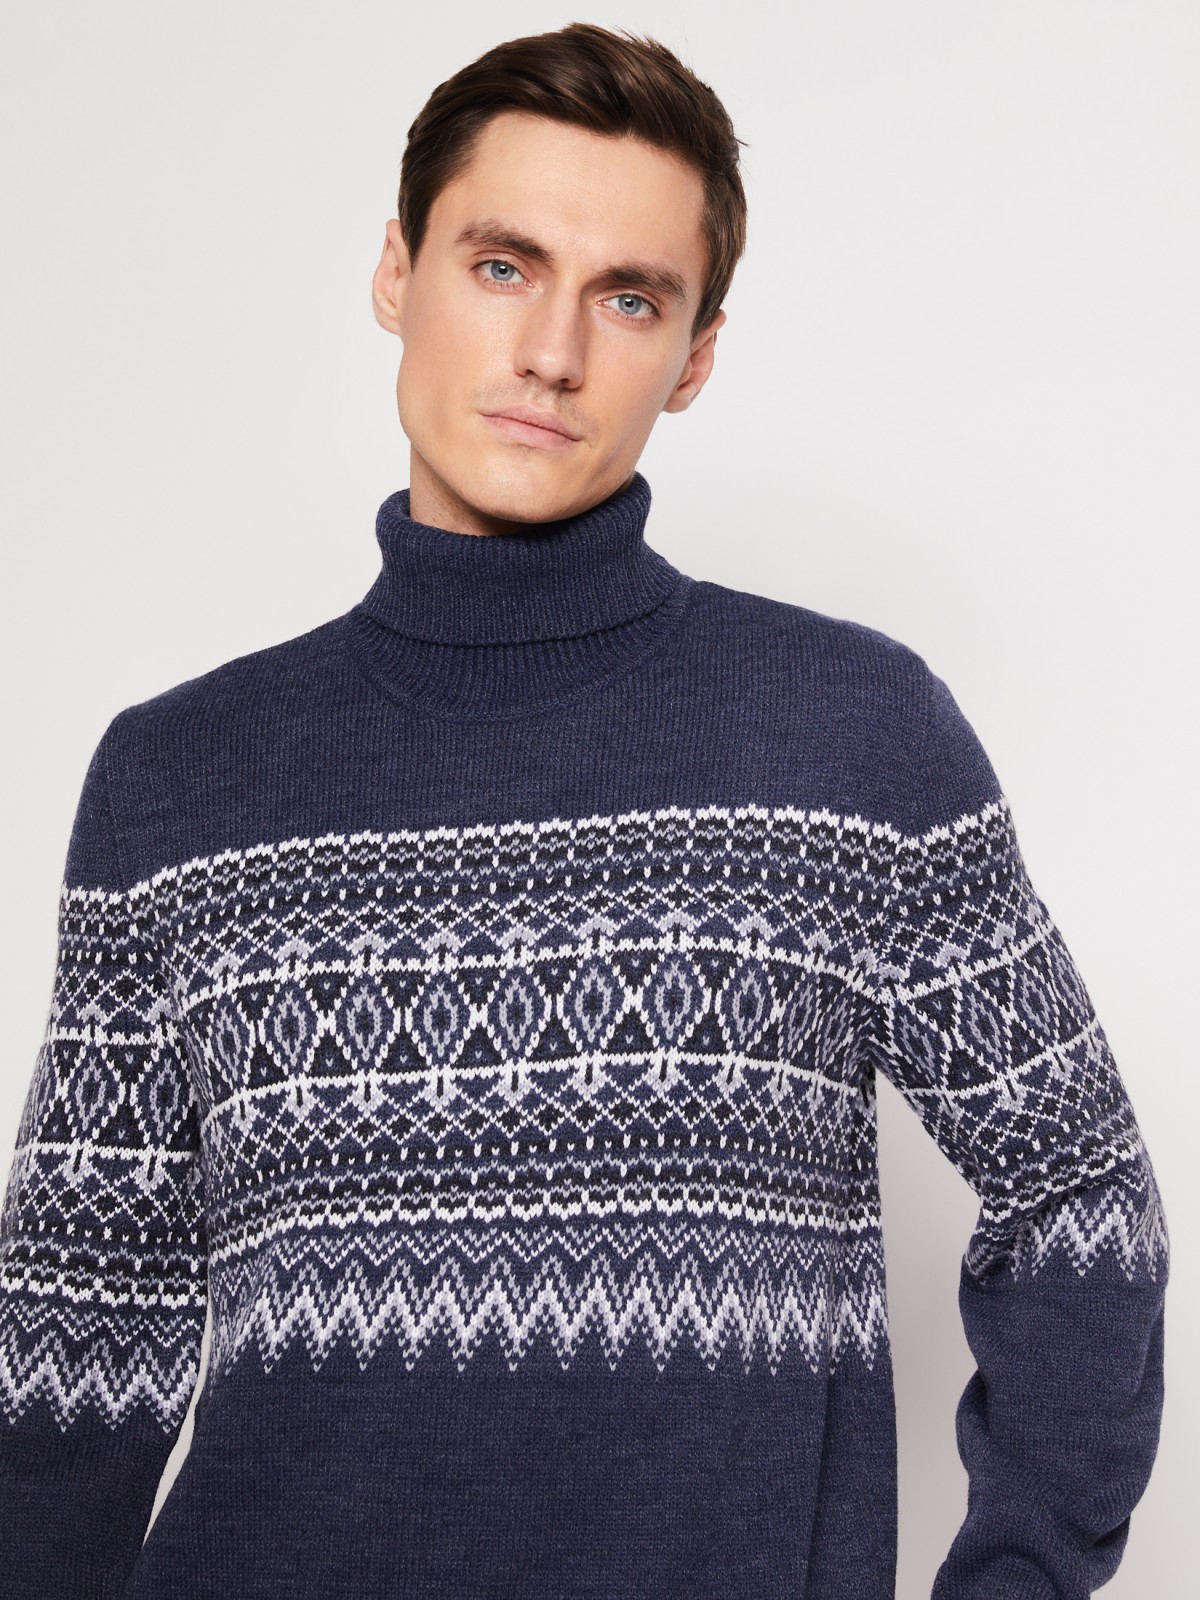 Вязаный свитер с узором zolla 011436143503, цвет голубой, размер S - фото 5